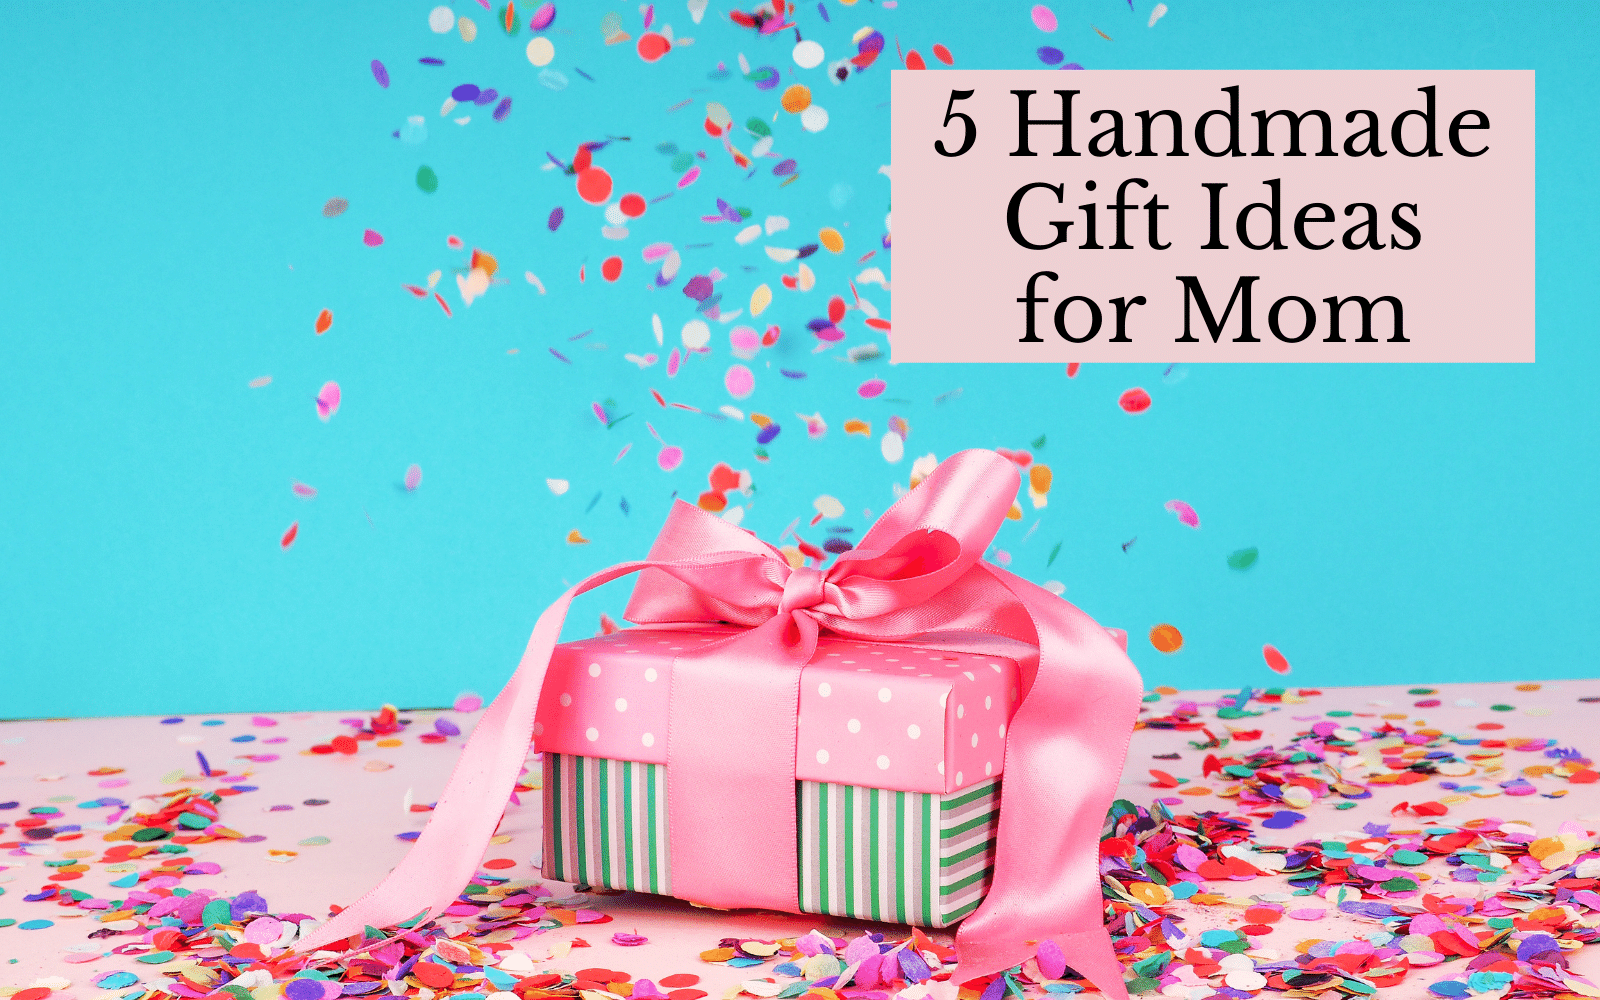 5 Handmade Gift Ideas for Mom